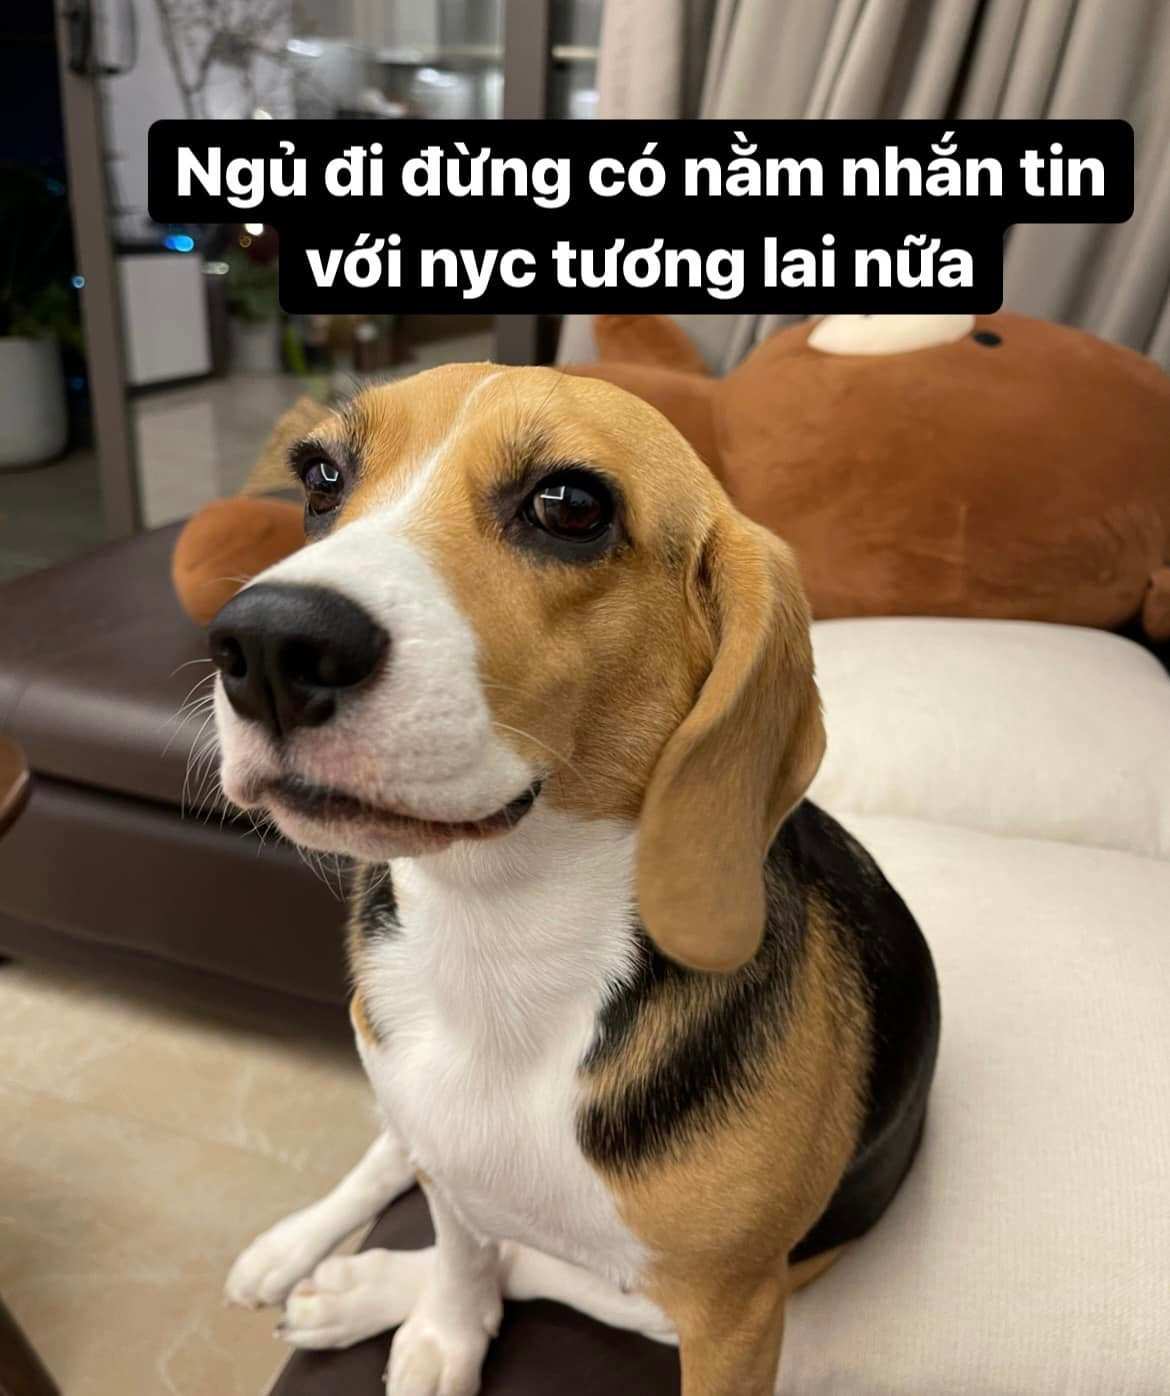 Ninh Tito chia sẻ meme hài hước của chú chó Dưa hấu